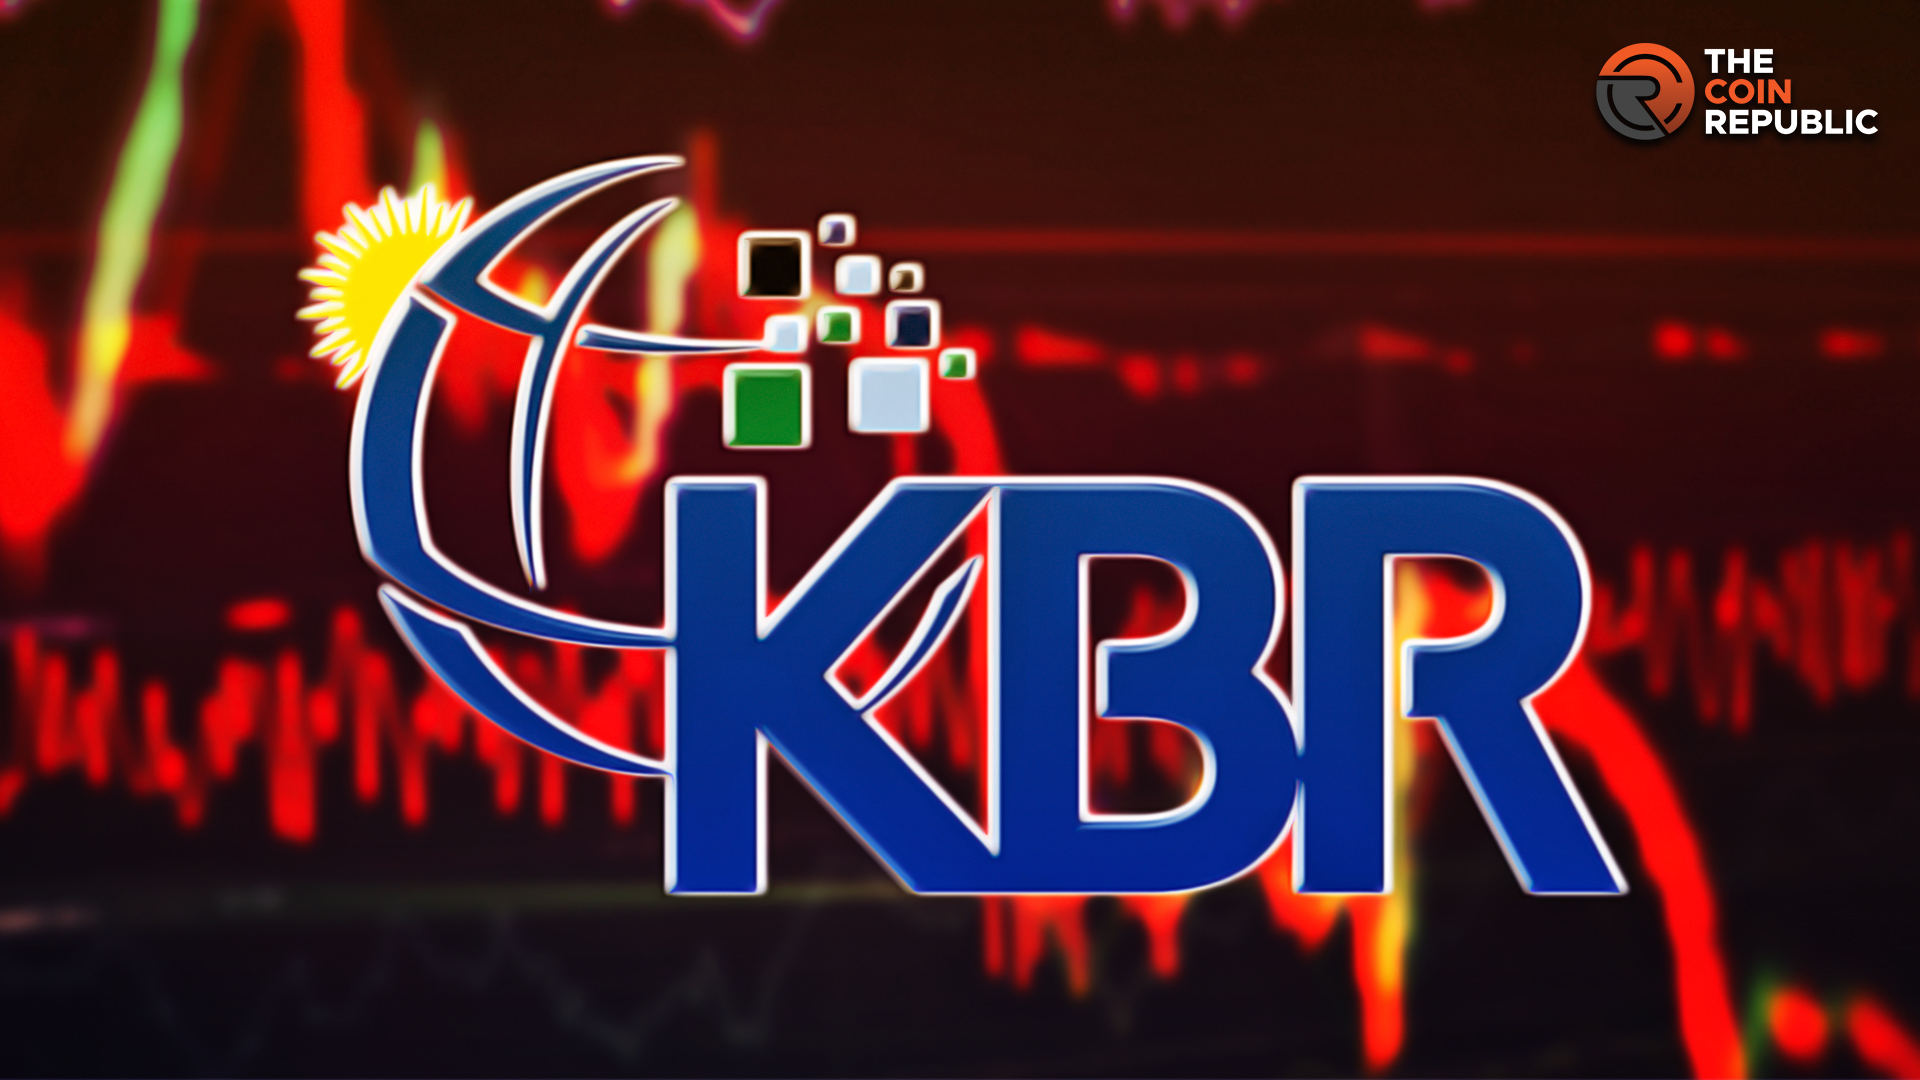 KBR Stock Price Prediction: Will Breakdown Continue In KBR Price?